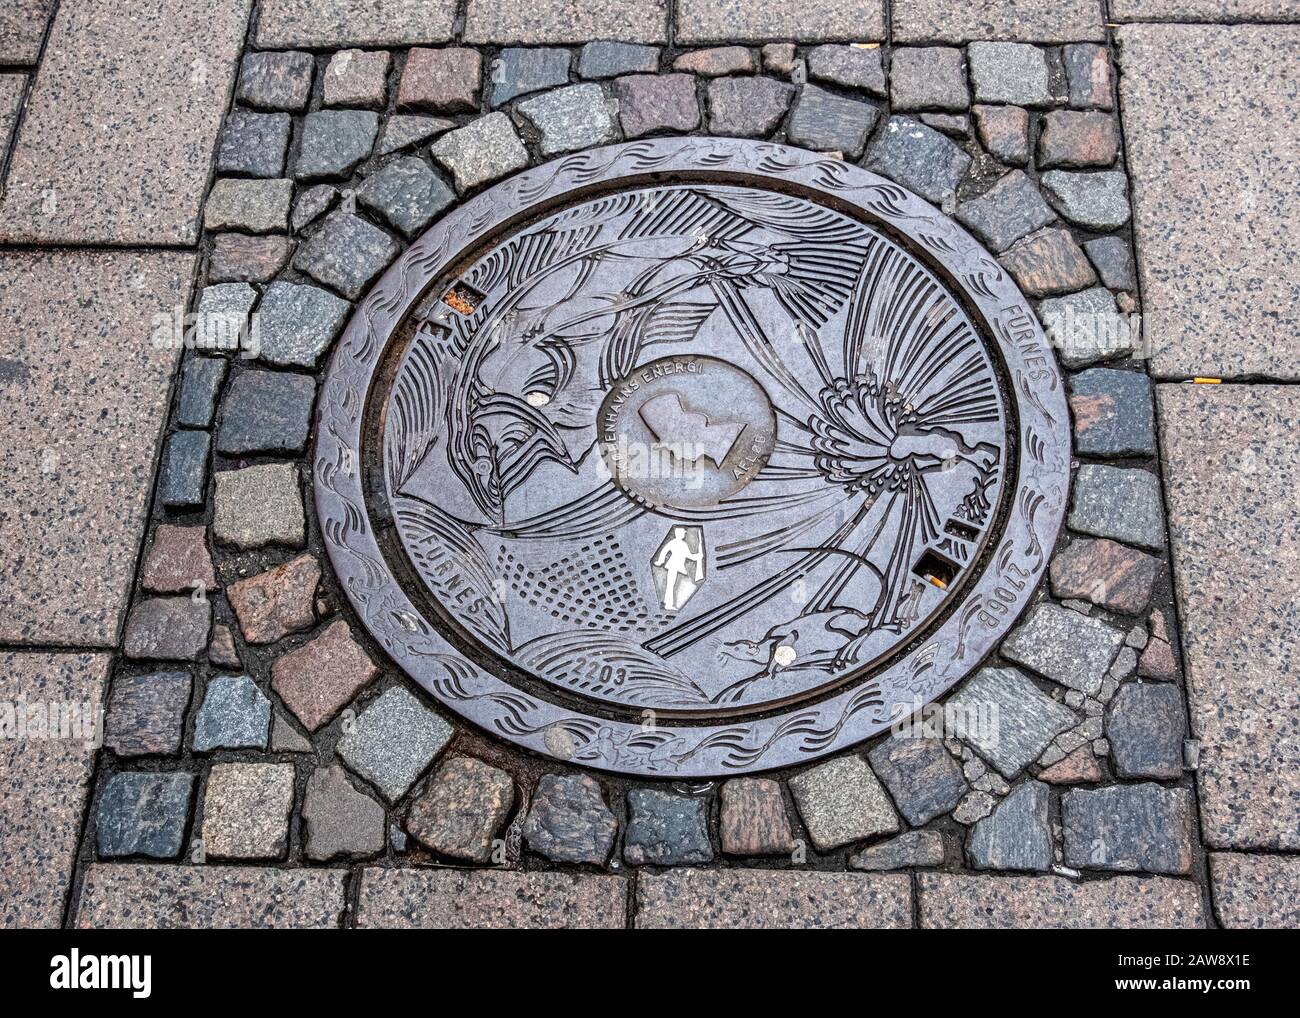 La couverture de trou d'homme conçue par Peter Hentze illustre l'histoire de Hans Christian Andersen, le Soldier De l'étain Ferme. Copenhague, Danemark Banque D'Images